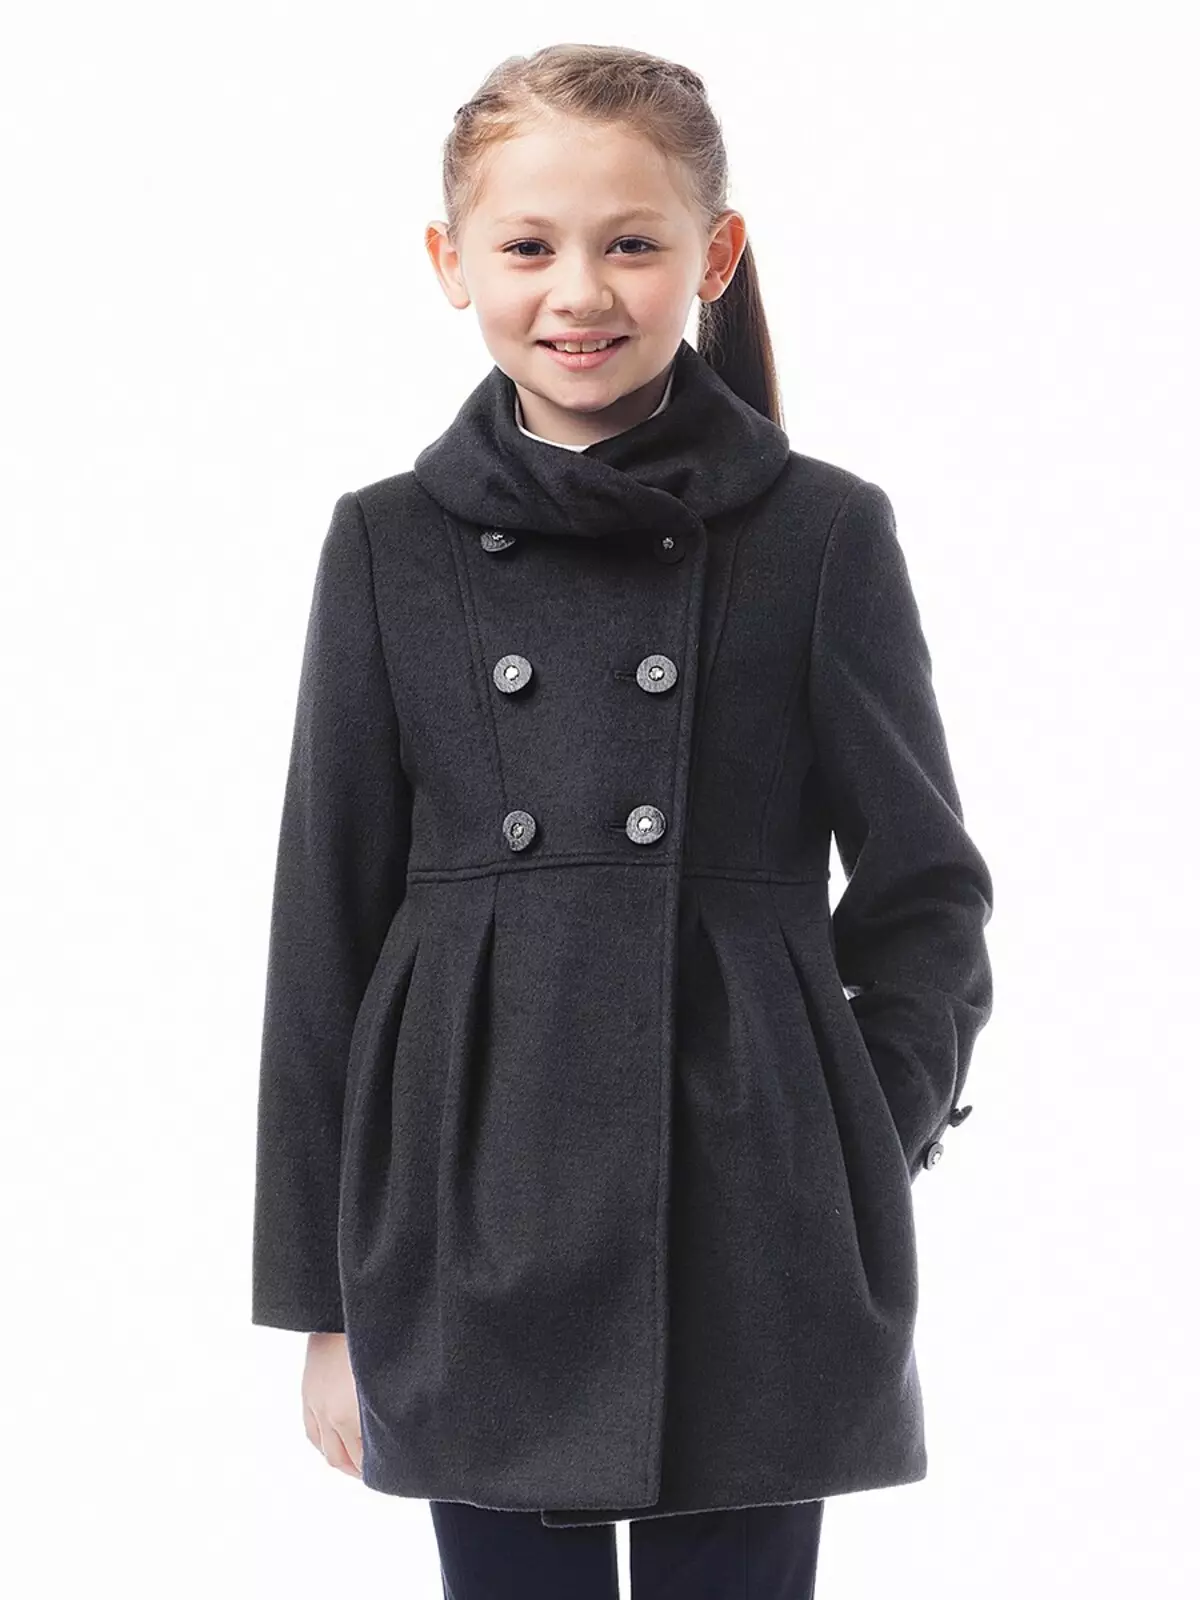 Cleverly (55 фото): шкільна форма і одяг, плаття і жилет для дівчинки, пальто і блузки, відгуки 3760_33